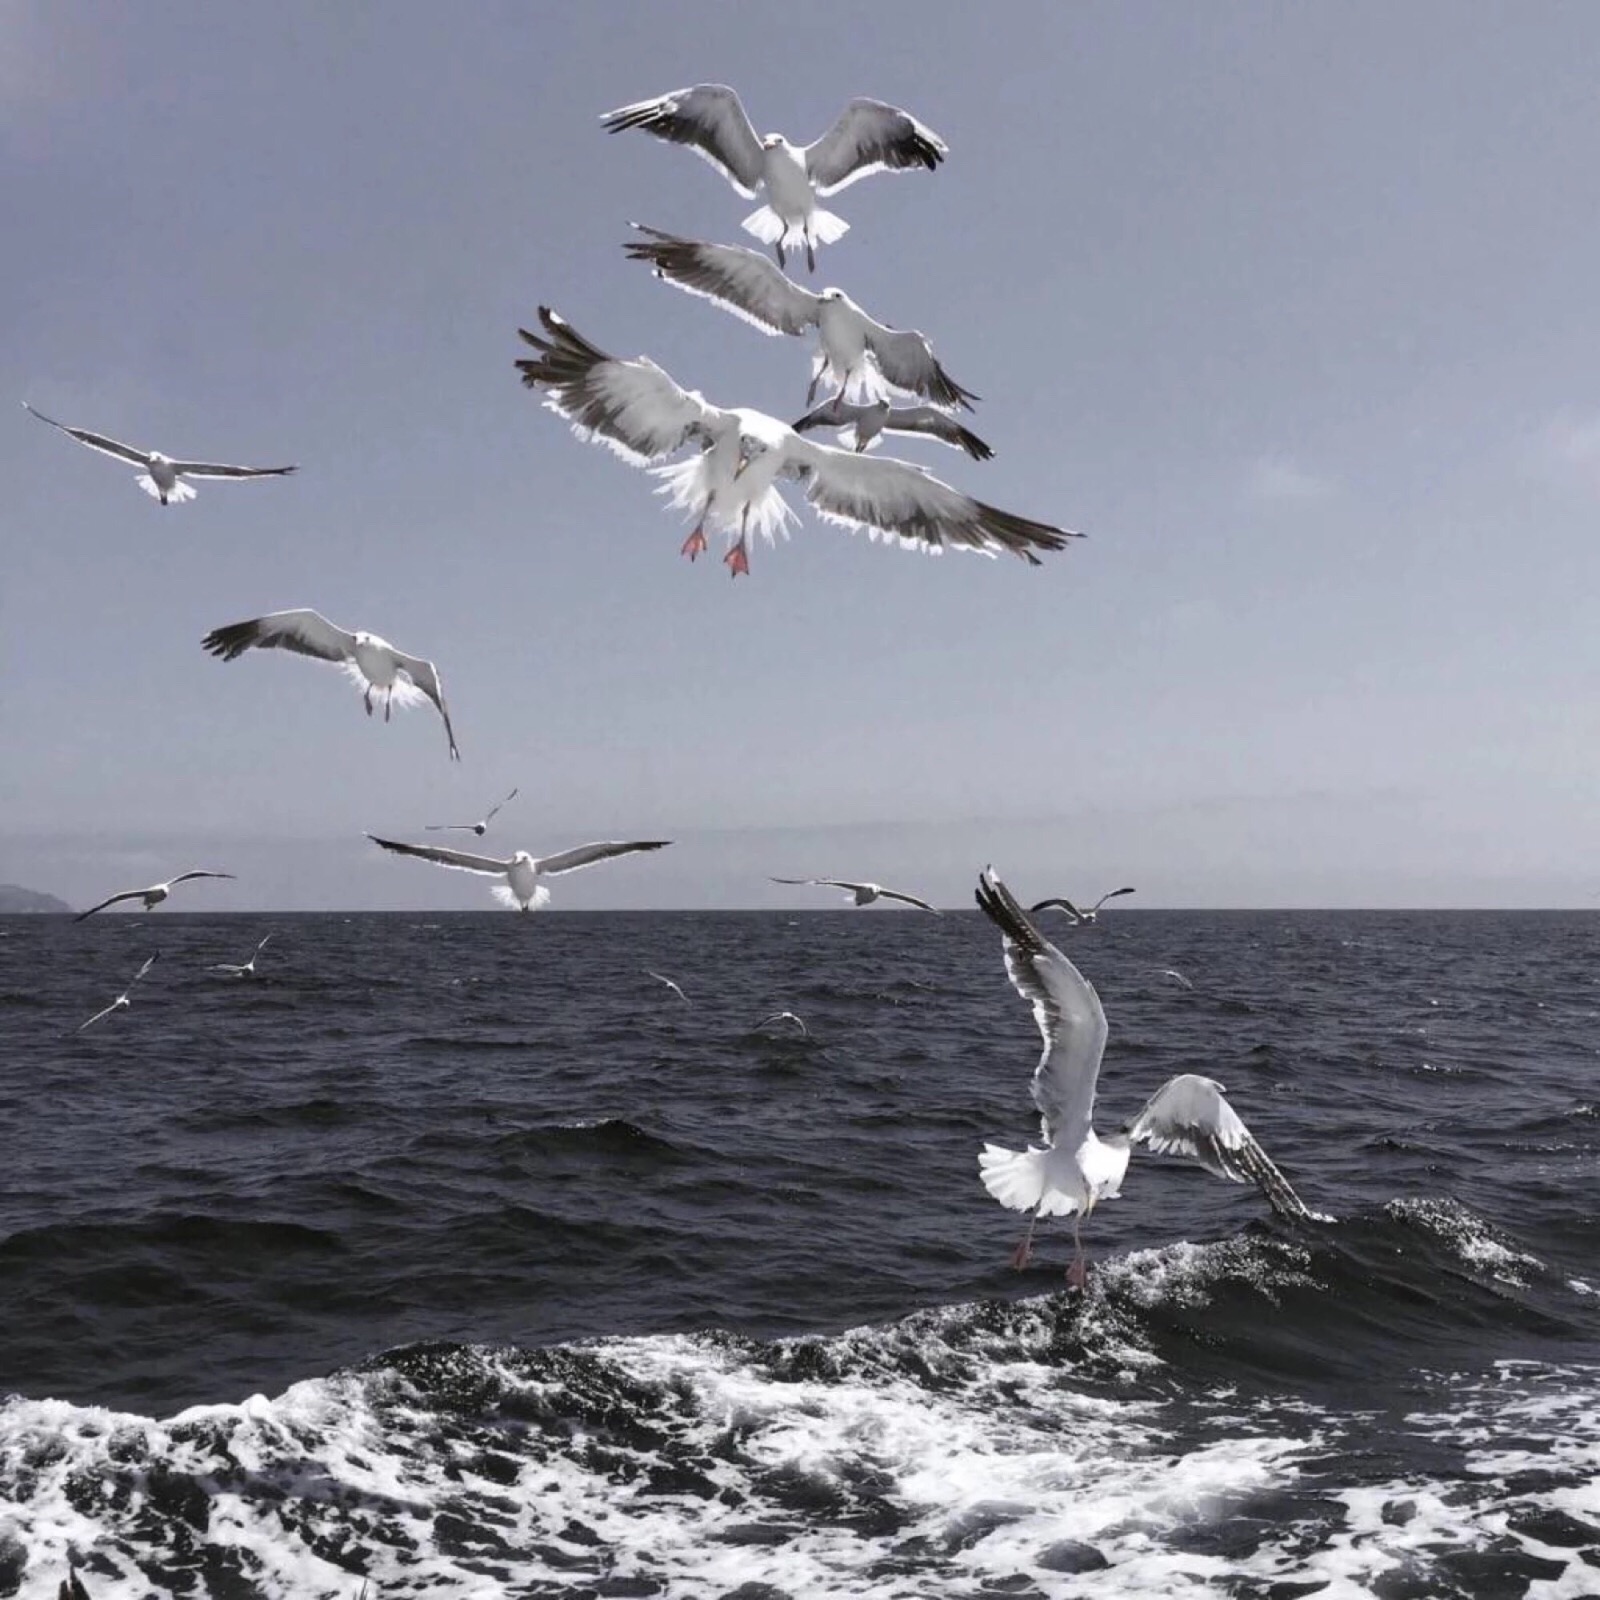 自由海鸥(风景静态壁纸) - 静态壁纸下载 - 元气壁纸